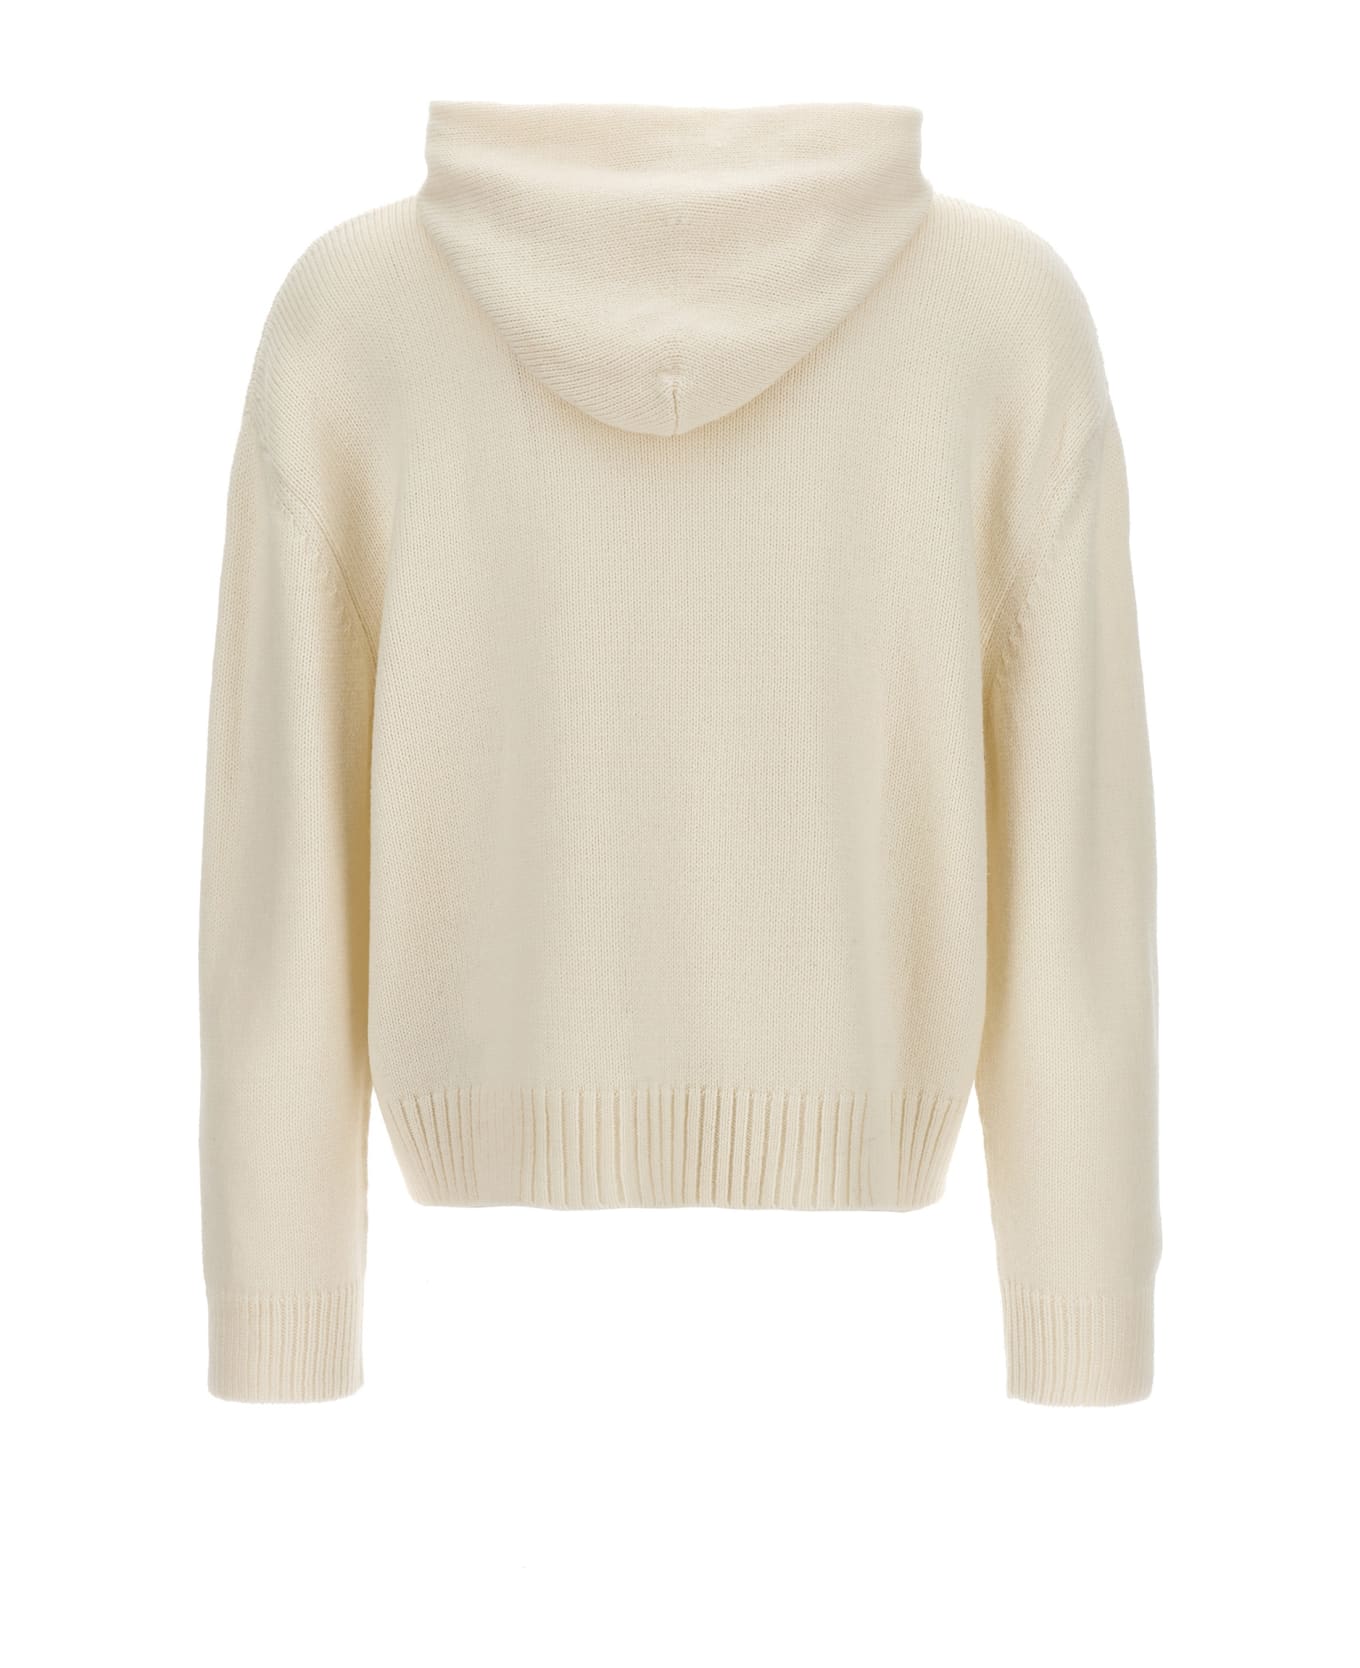 MM6 Maison Margiela 'numeric Signature' Hooded Sweater - White/Black